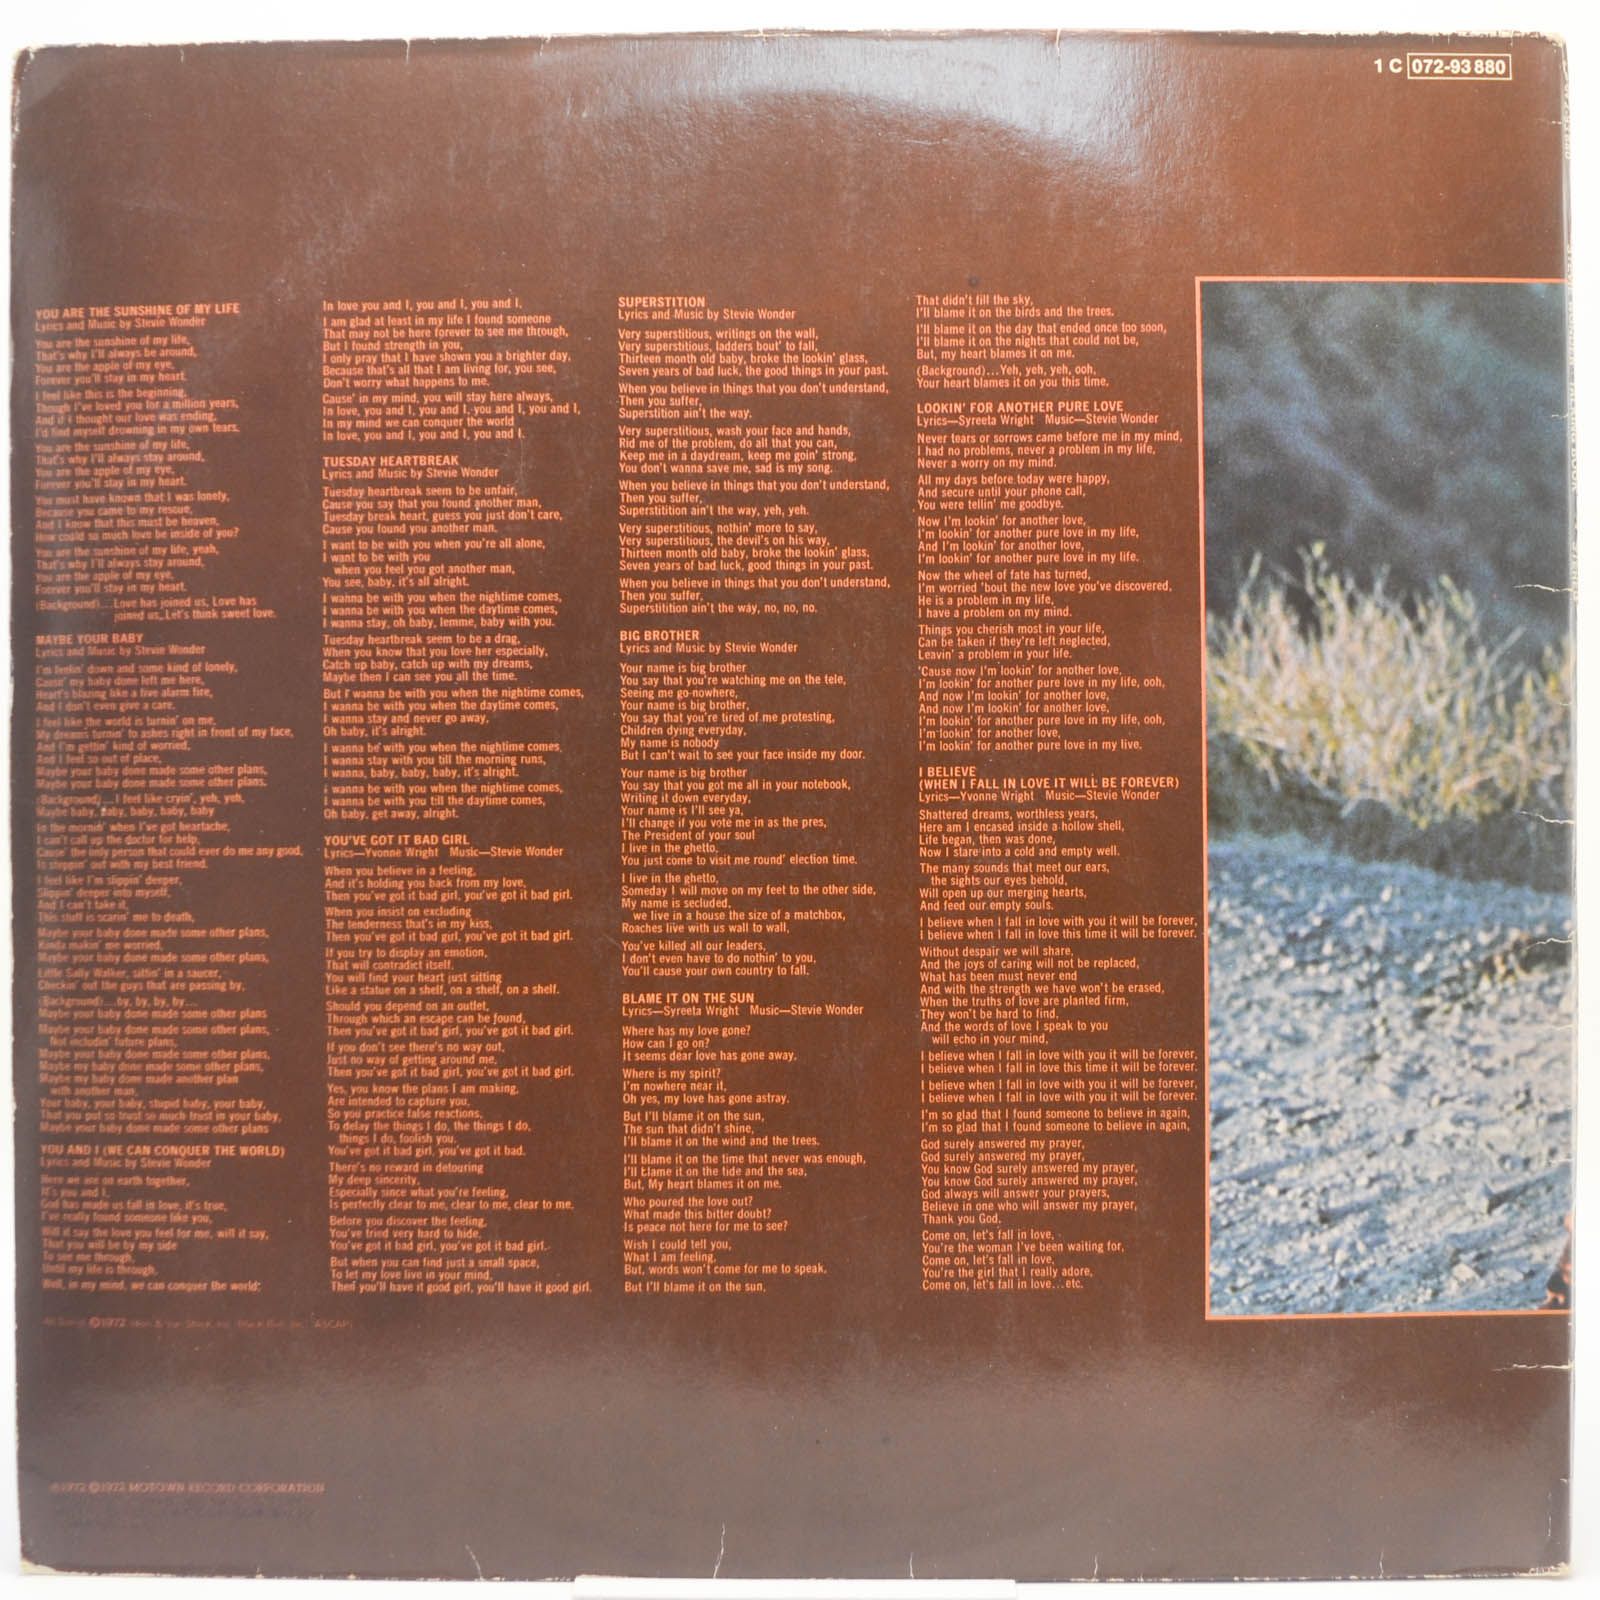 Stevie Wonder — Talking Book, 1972